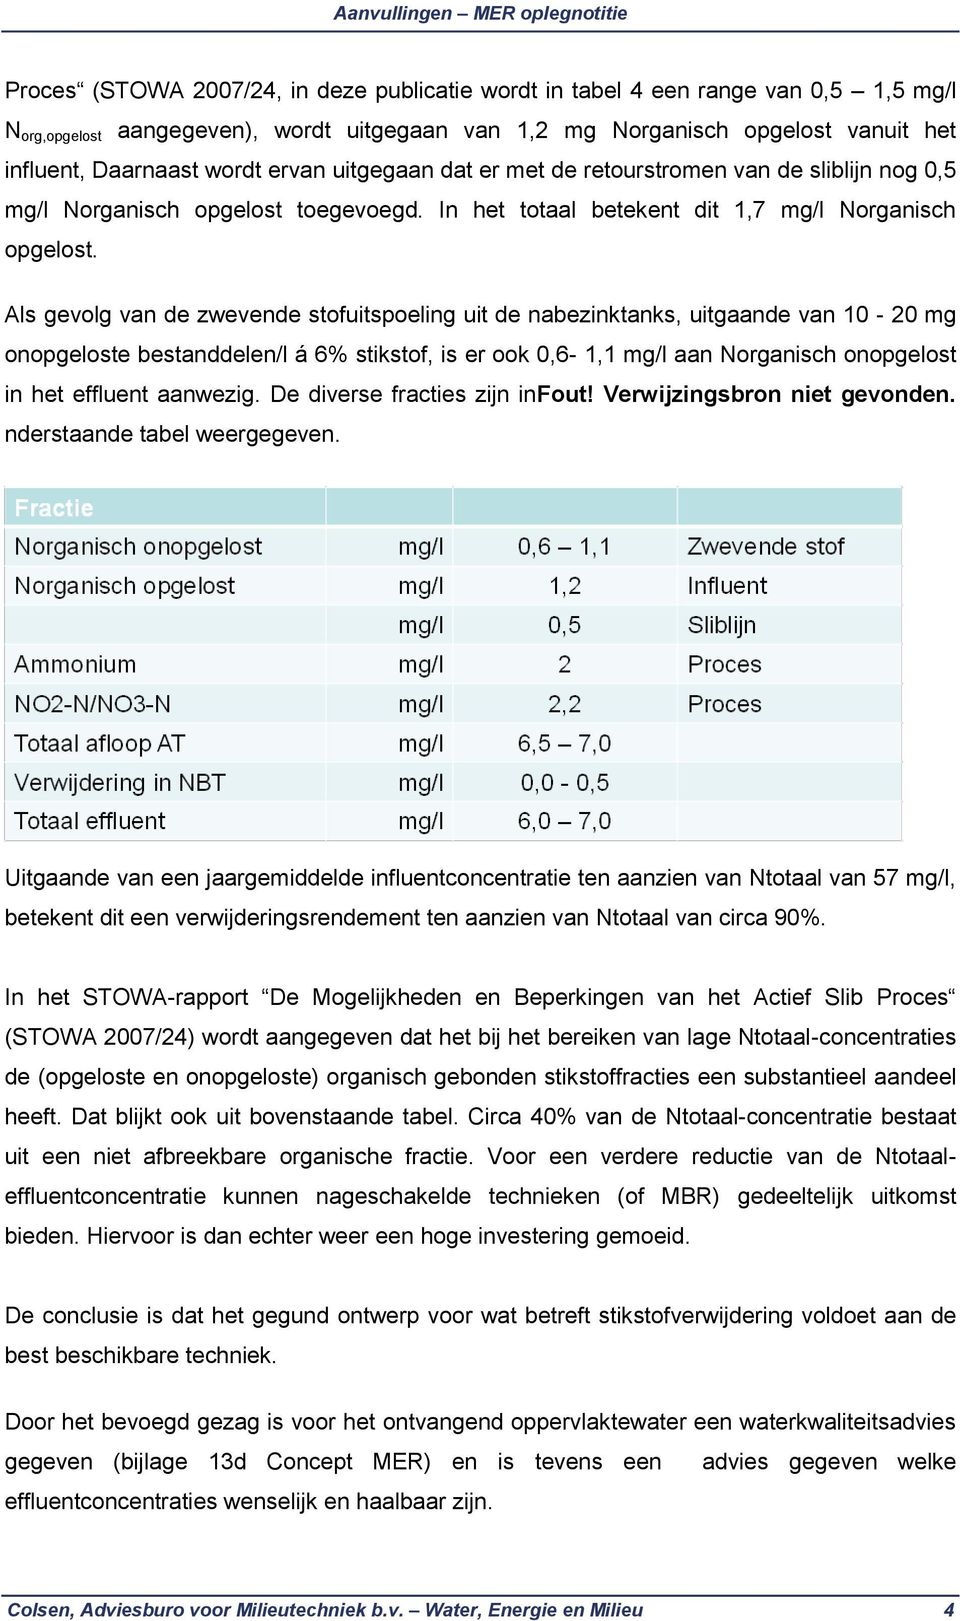 Als gevolg van de zwevende stofuitspoeling uit de nabezinktanks, uitgaande van 10-20 mg onopgeloste bestanddelen/l á 6% stikstof, is er ook 0,6-1,1 mg/l aan Norganisch onopgelost in het effluent